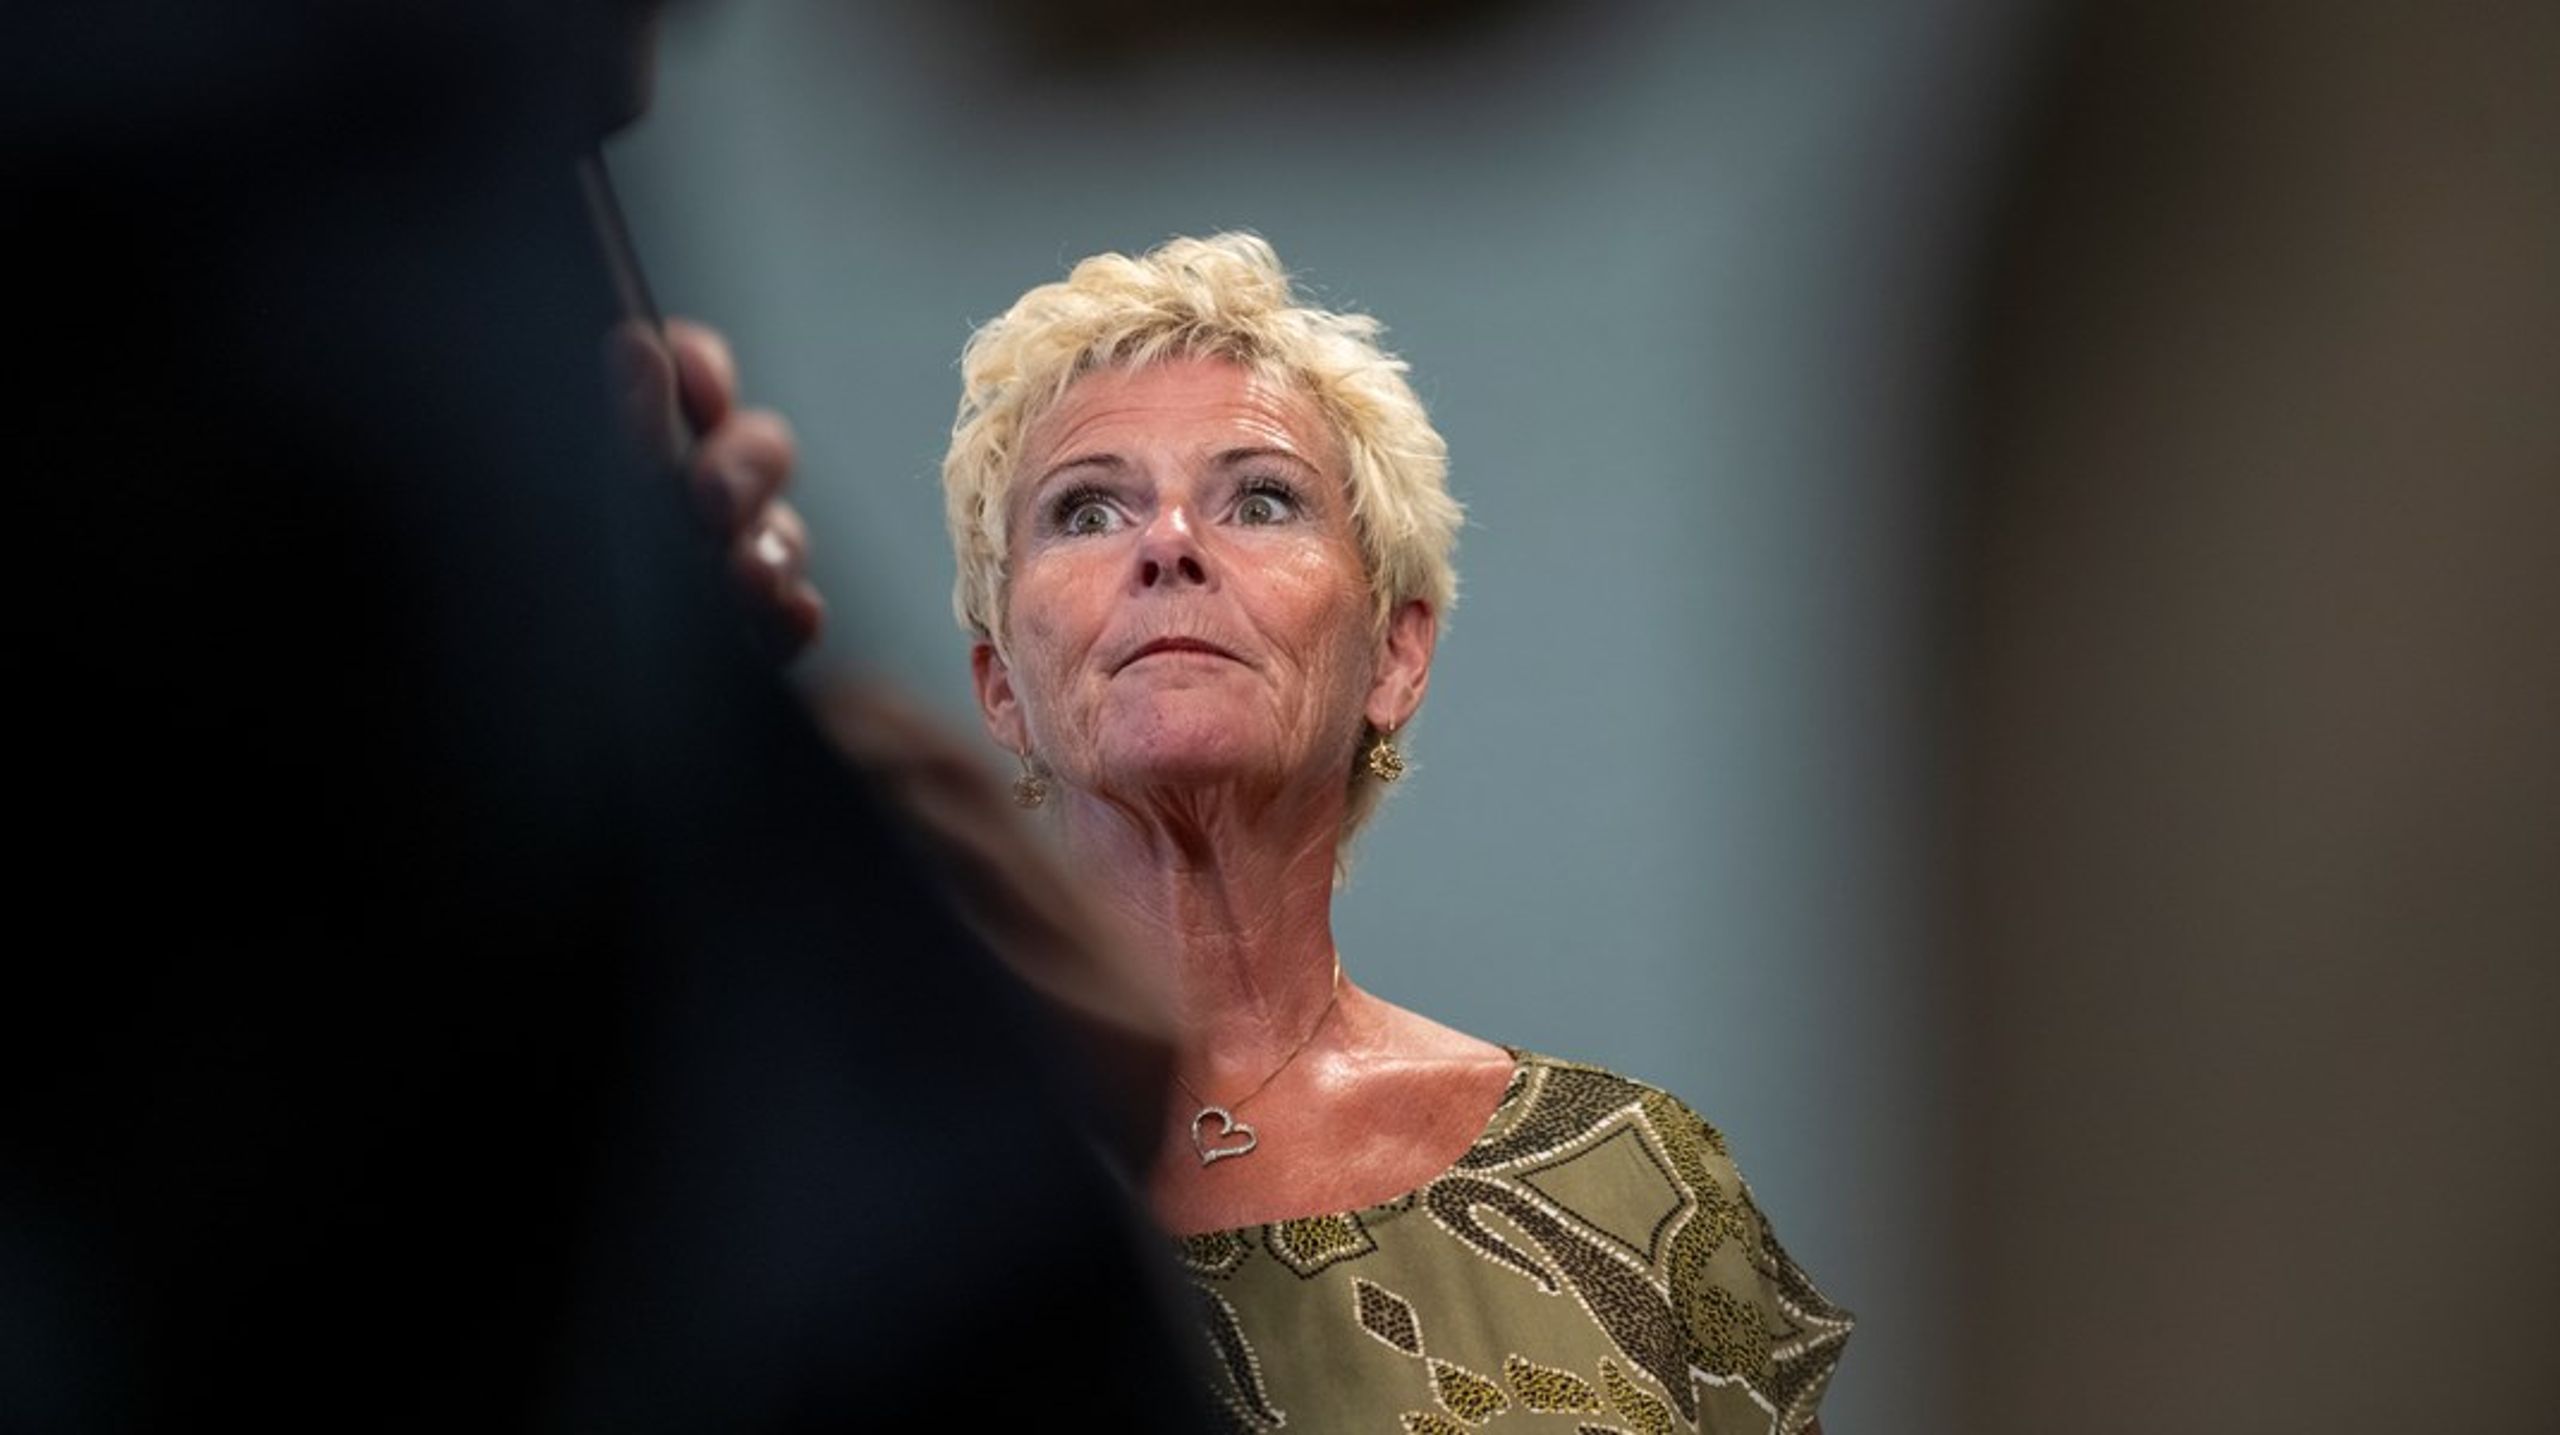 Lizette Risgaard har mistet flere topposter efter anklager om grænseoverskridende adfærd, fik hende til at træde tilbage som formand for Fagbevægelsens Hovedorganisation.